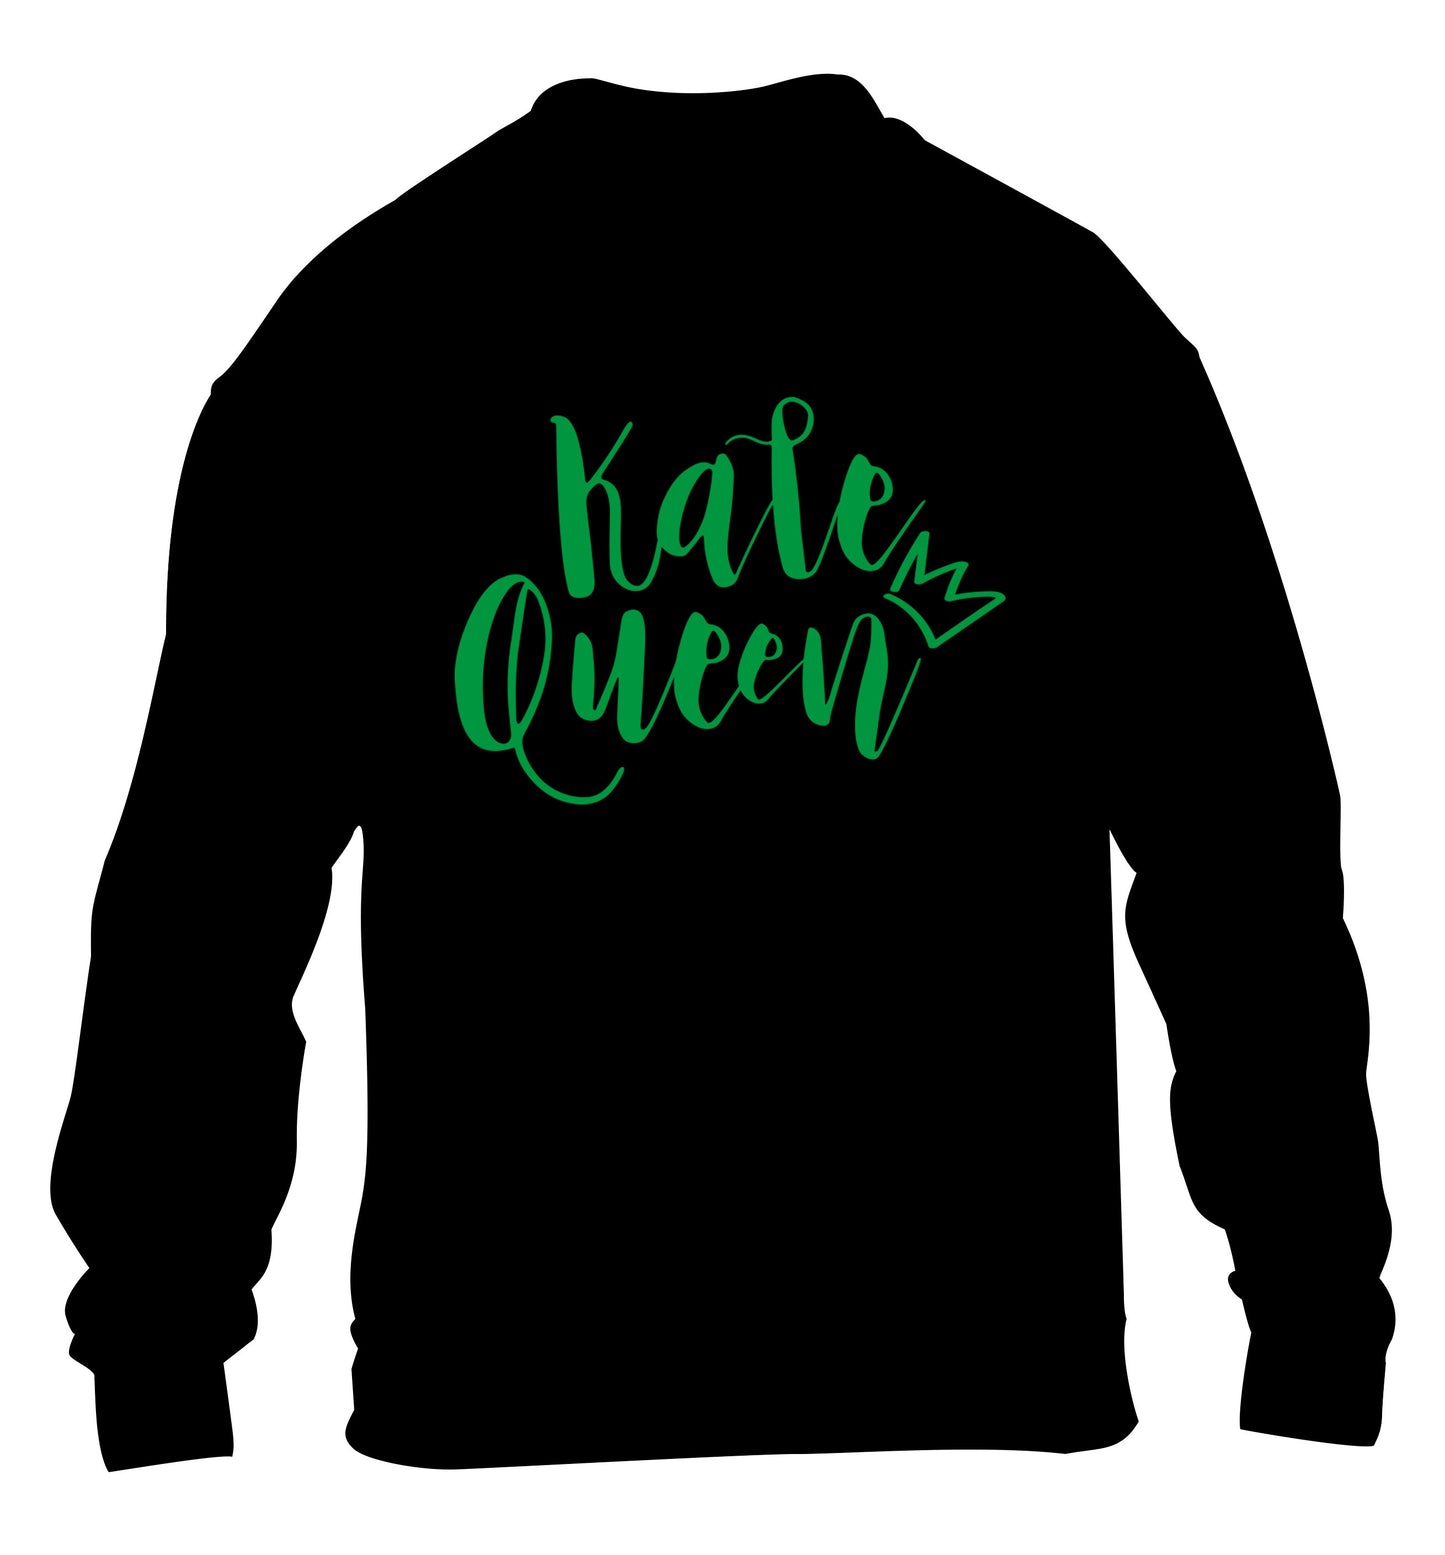 Kale Queen children's black  sweater 12-14 Years